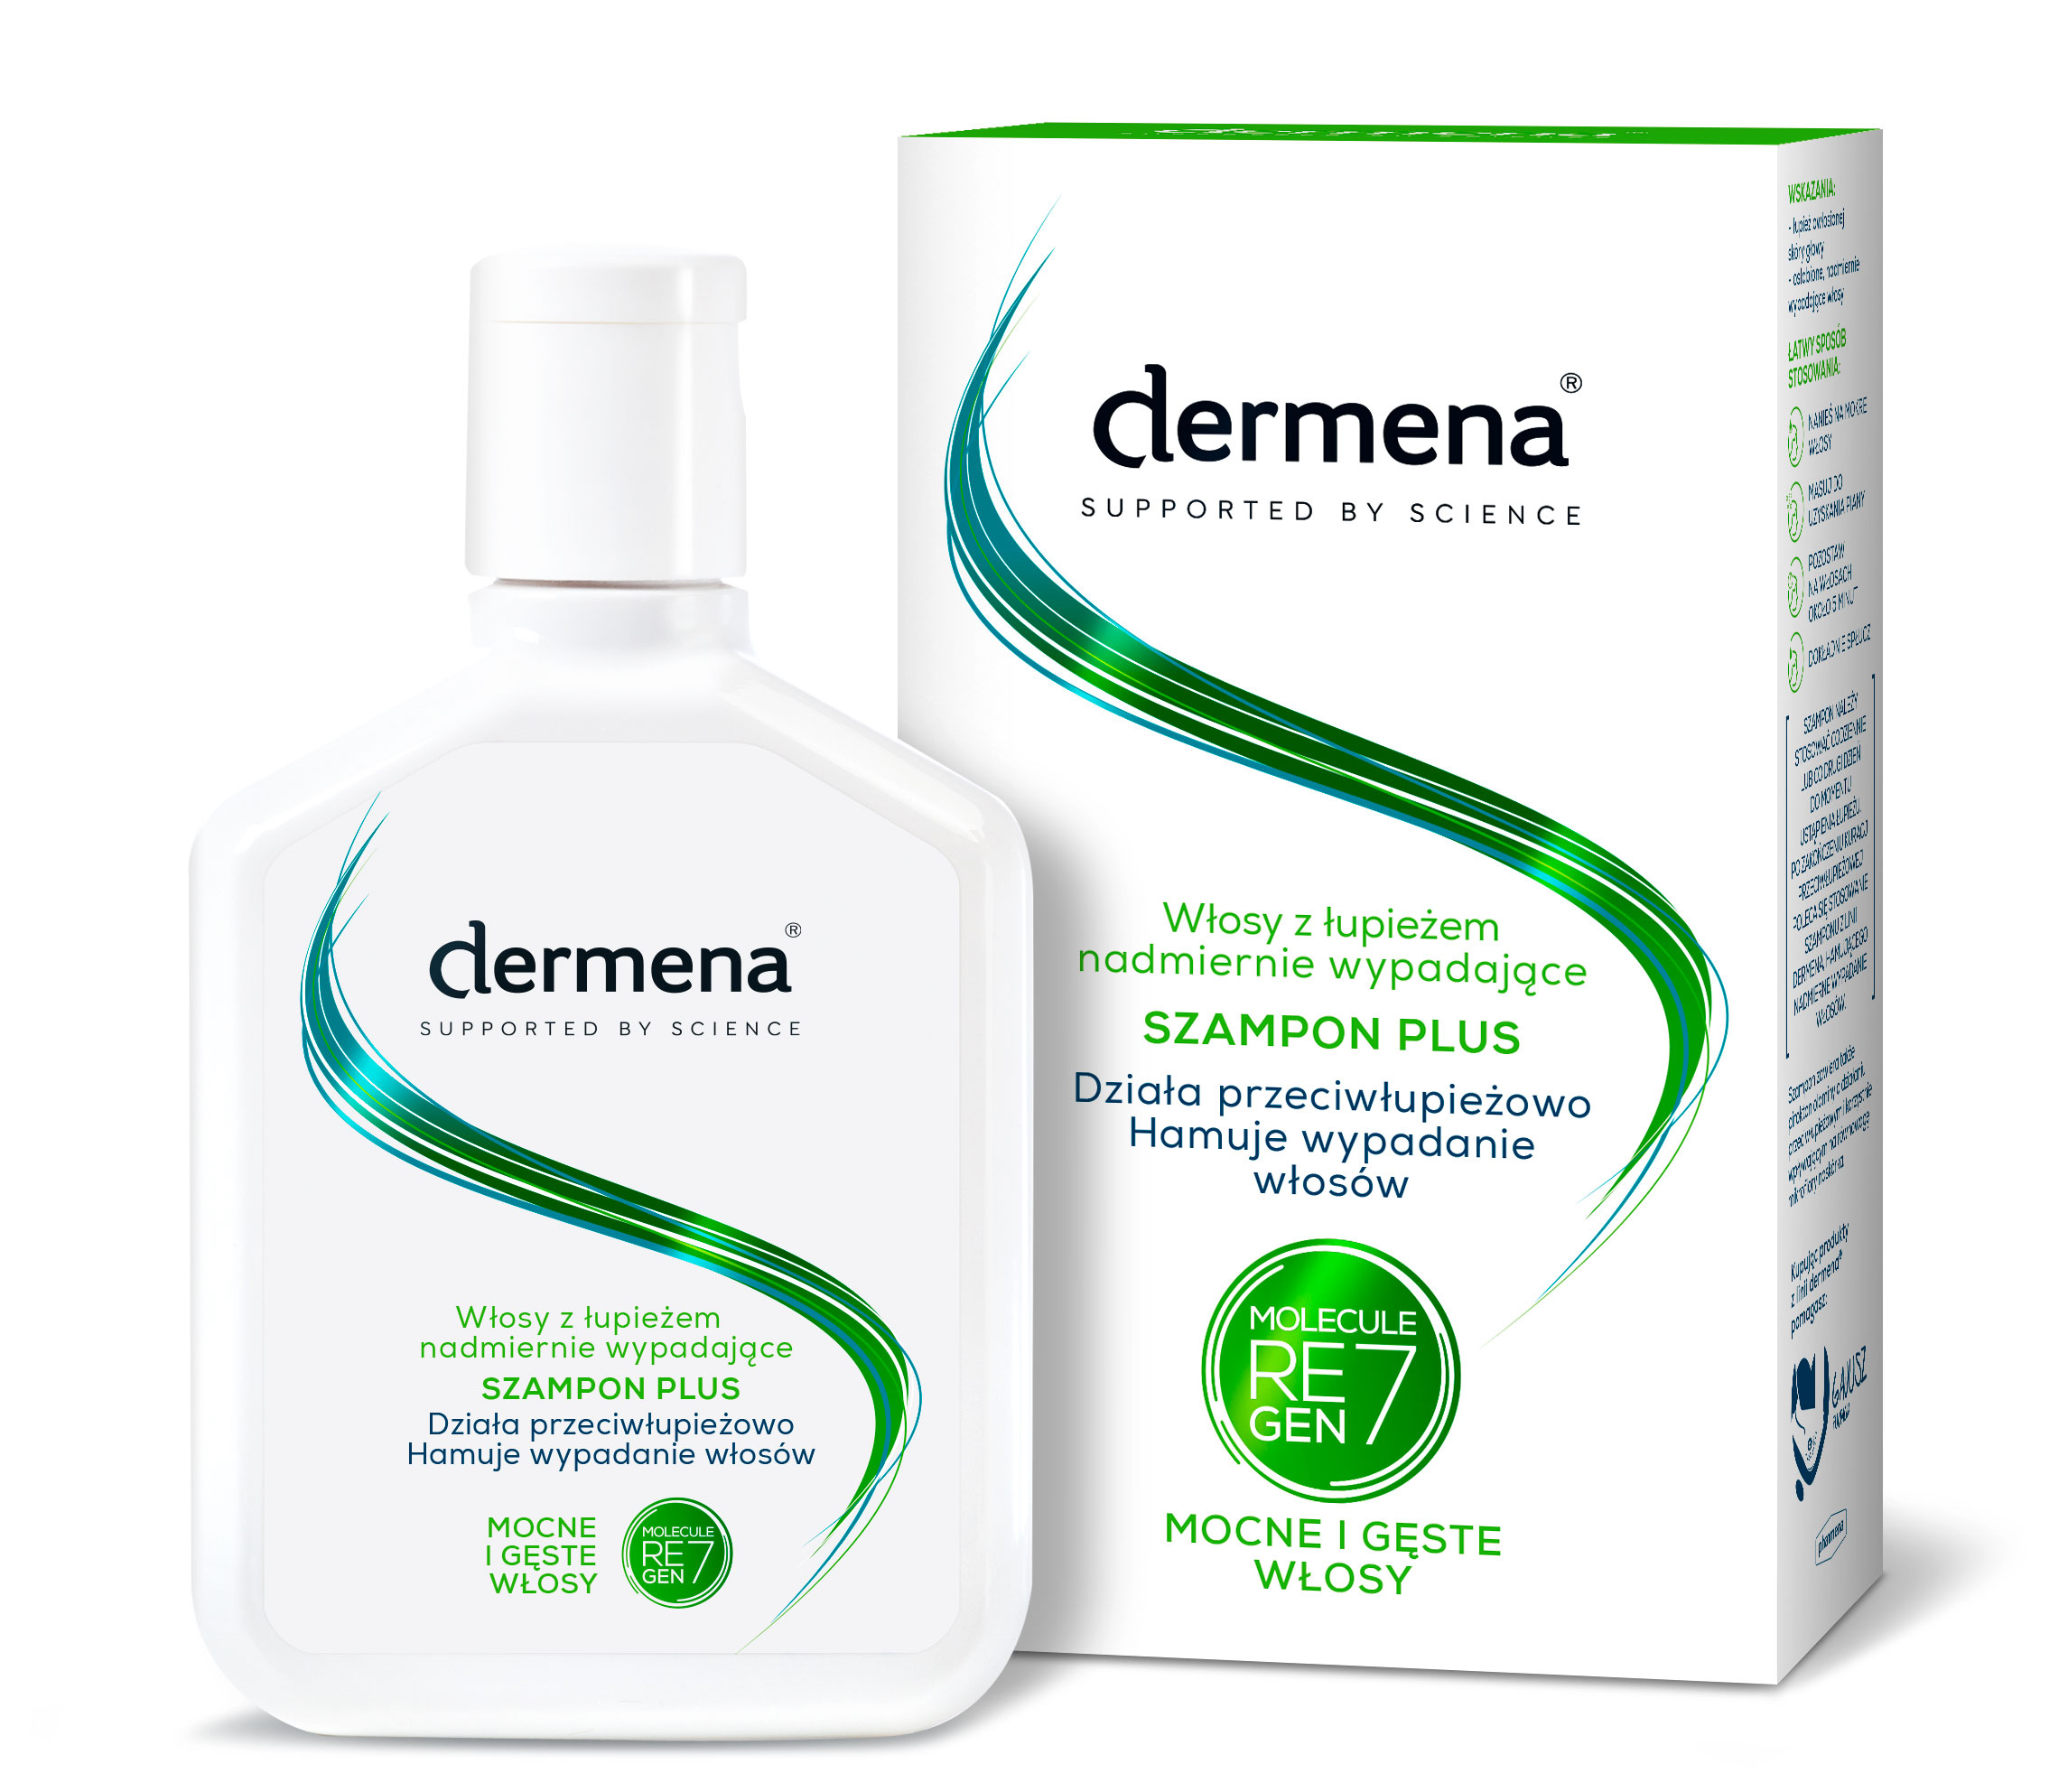 dermena szampon color care